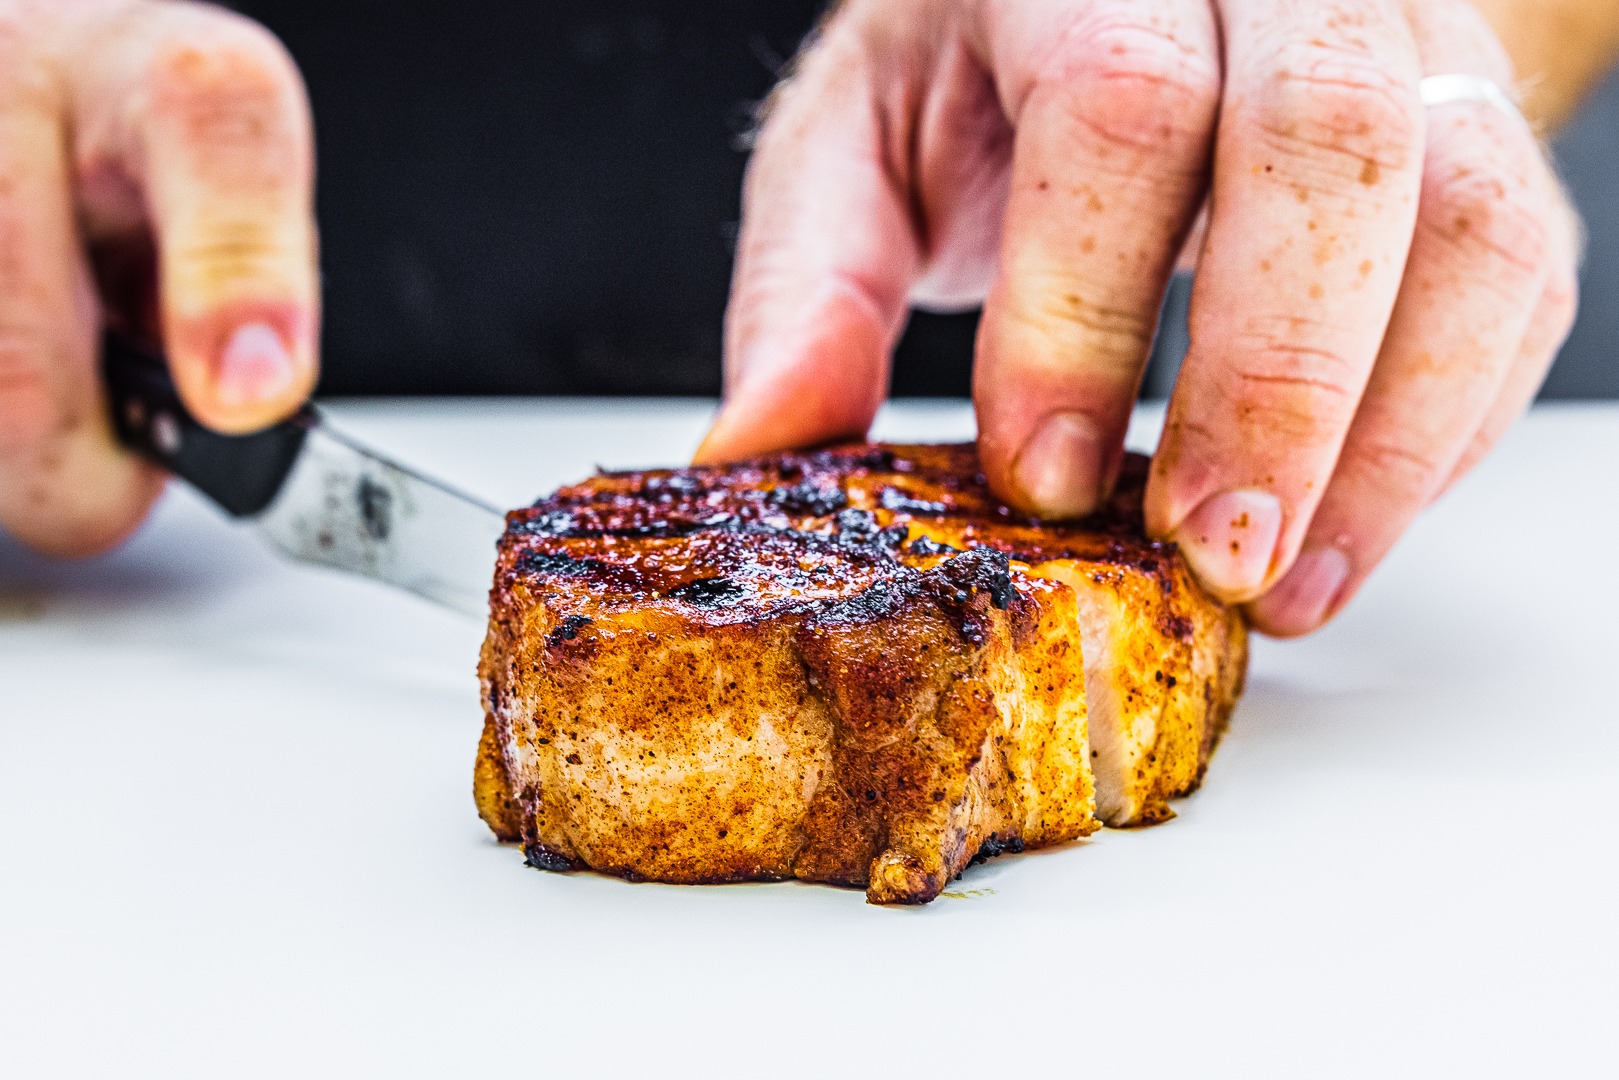 1 2 inch pork chops on grill